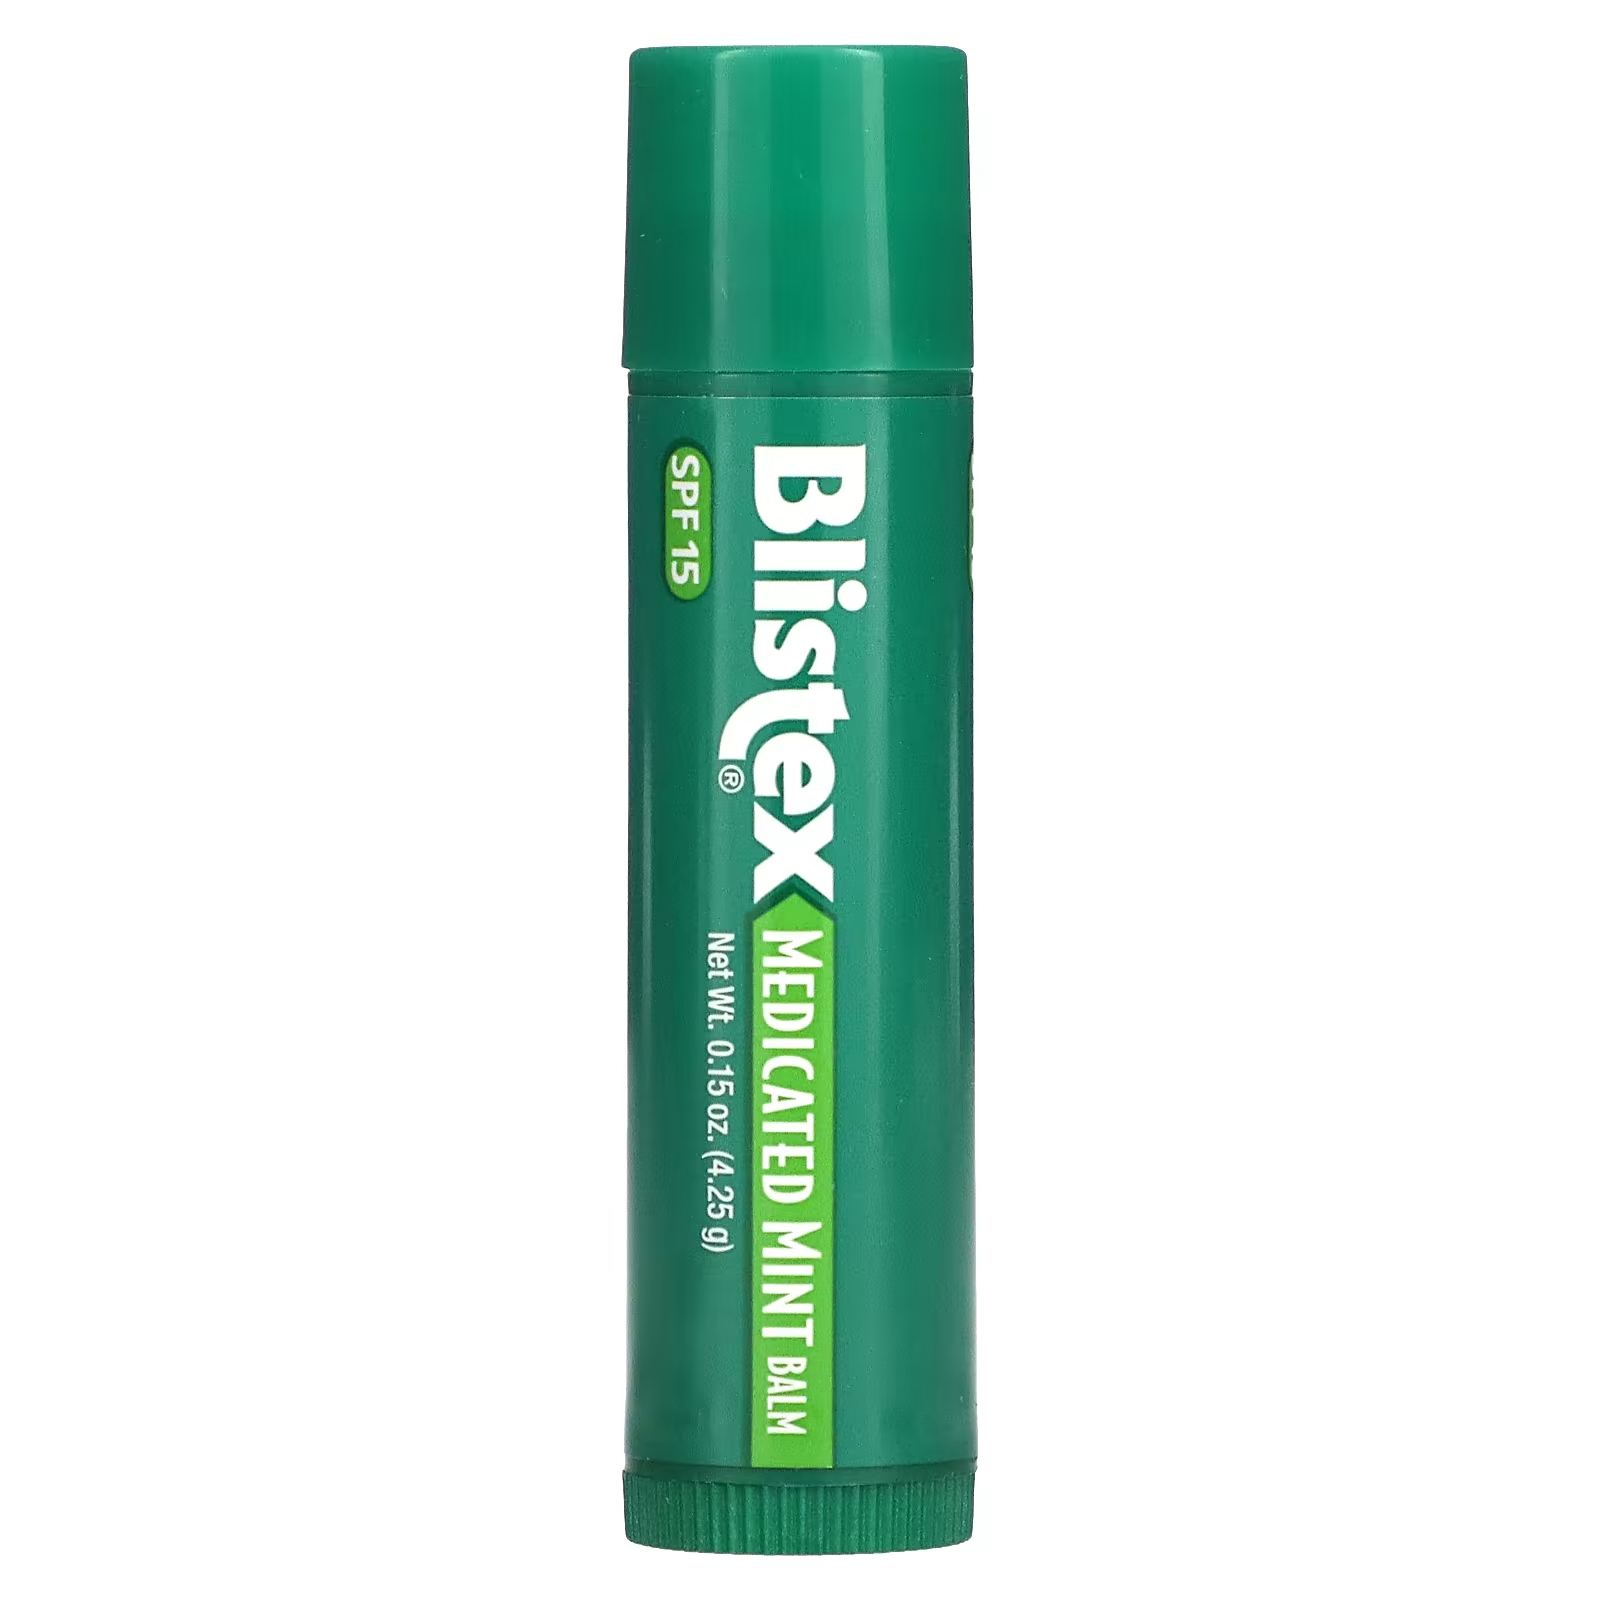 Blistex Лекарственное средство для защиты губ/солнцезащитное средство SPF 15, мятное, 0,15 унции (4,25 г) softlips солнцезащитное средство для губ spf 20 арбуз 2 пакетика по 2 г 0 07 унции